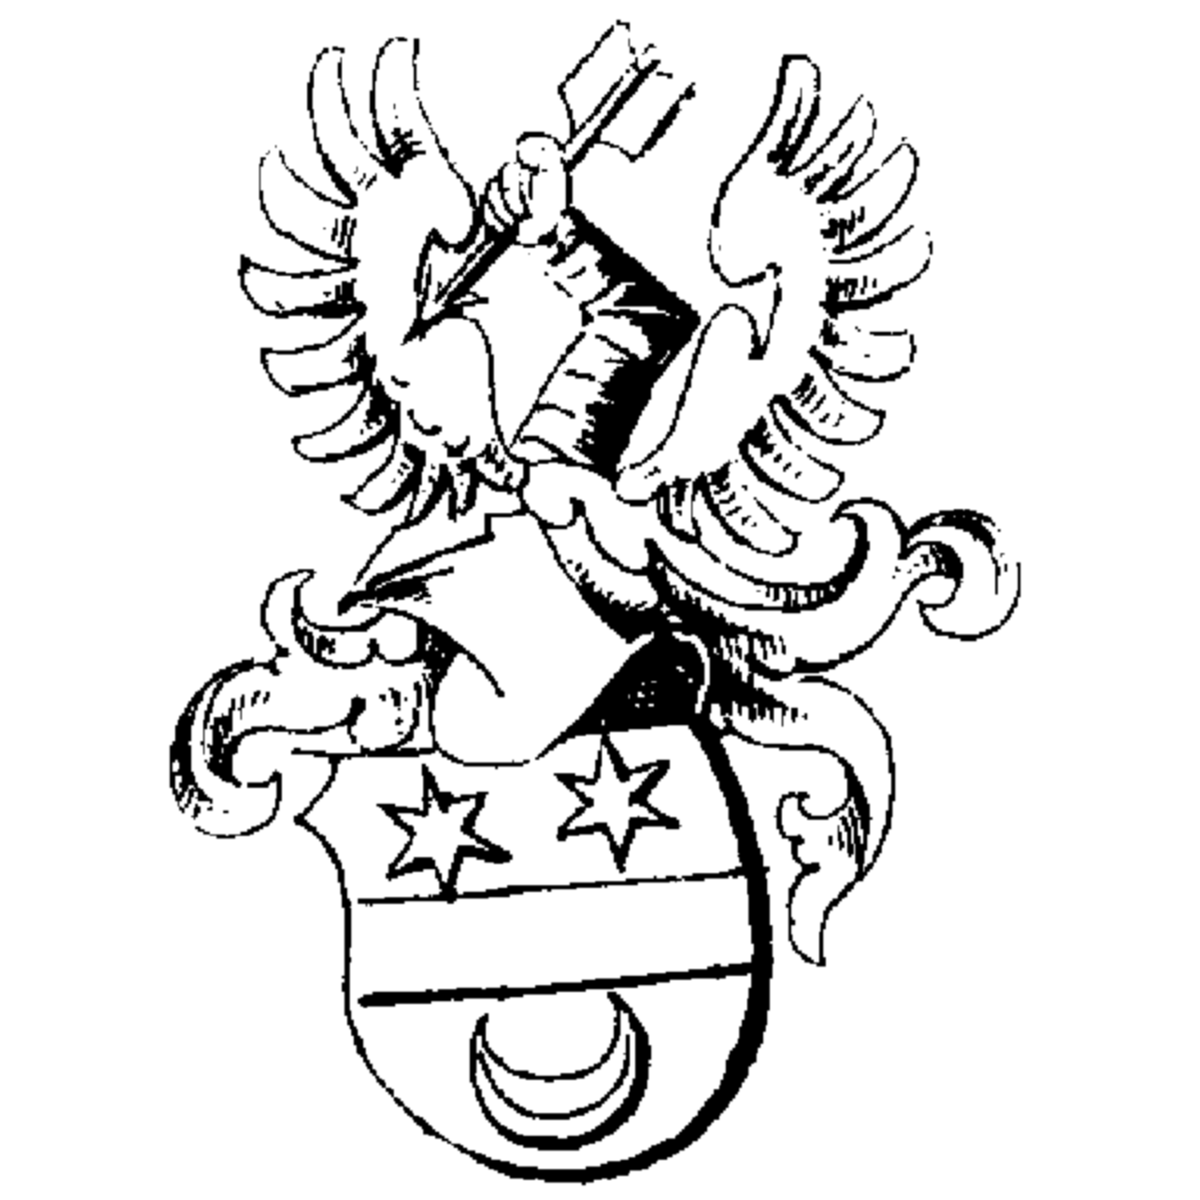 Wappen der Familie Sparnronft